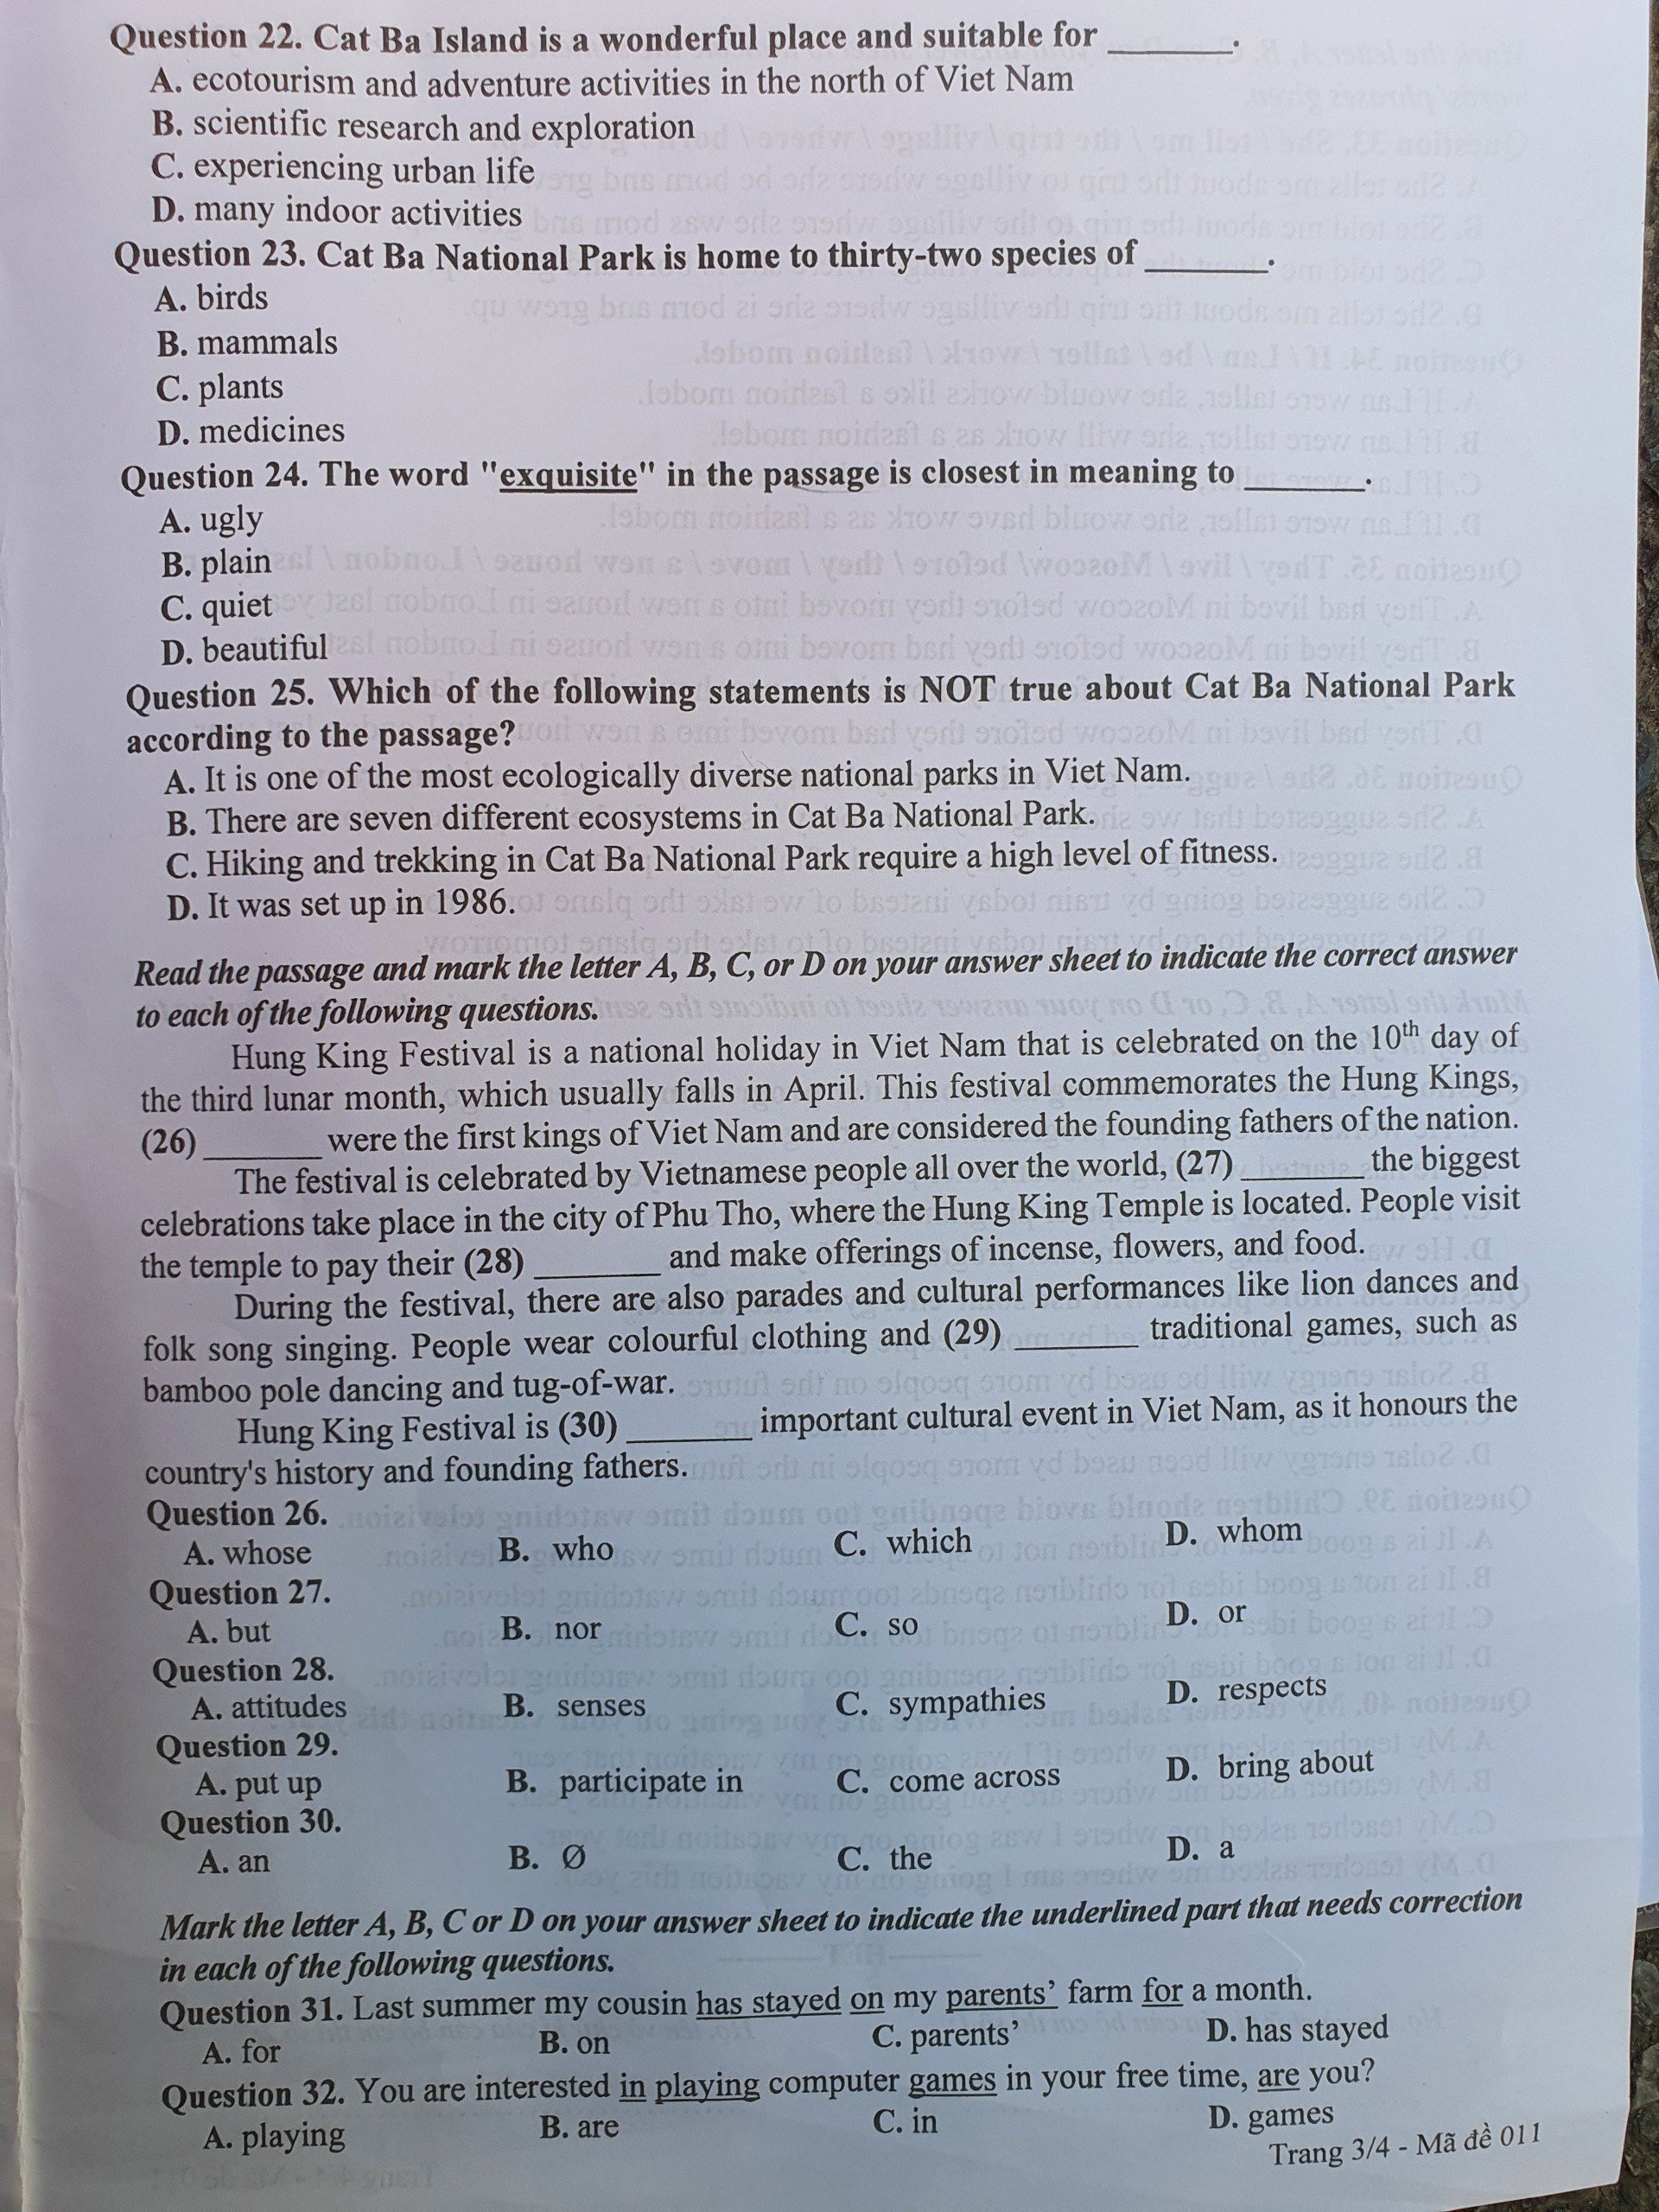 Tuyển sinh - Du học - Cập nhật đề thi, đáp án gợi ý môn Tiếng Anh vào lớp 10 tại Hà Nội chuẩn nhất, chi tiết nhất (Hình 3).